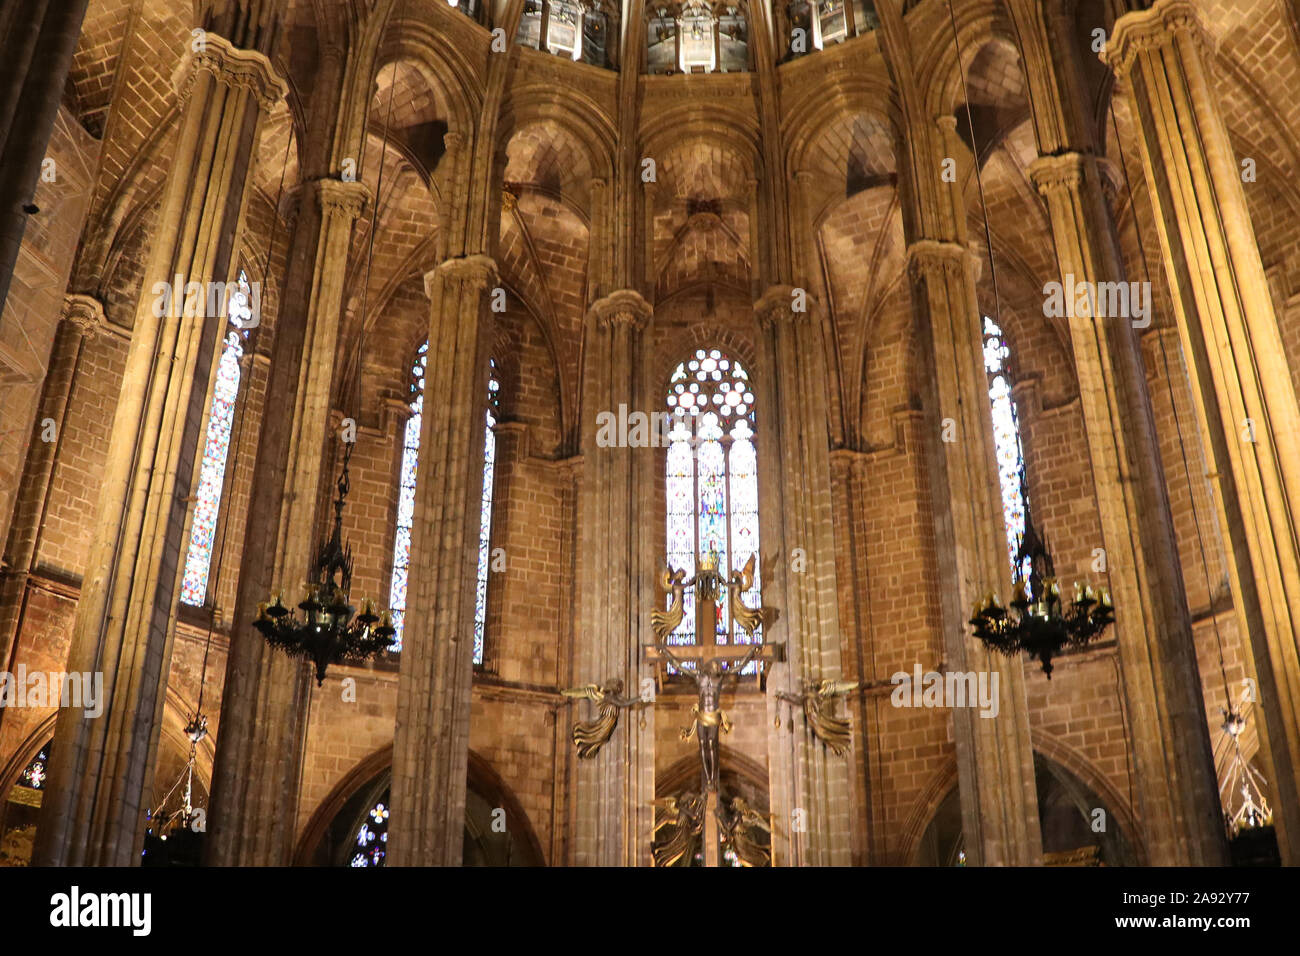 Die Kathedrale von Barcelona, reich an typischen gotischen Stil mit eleganten Fenstern und detaillierte Entwürfe überall Stockfoto